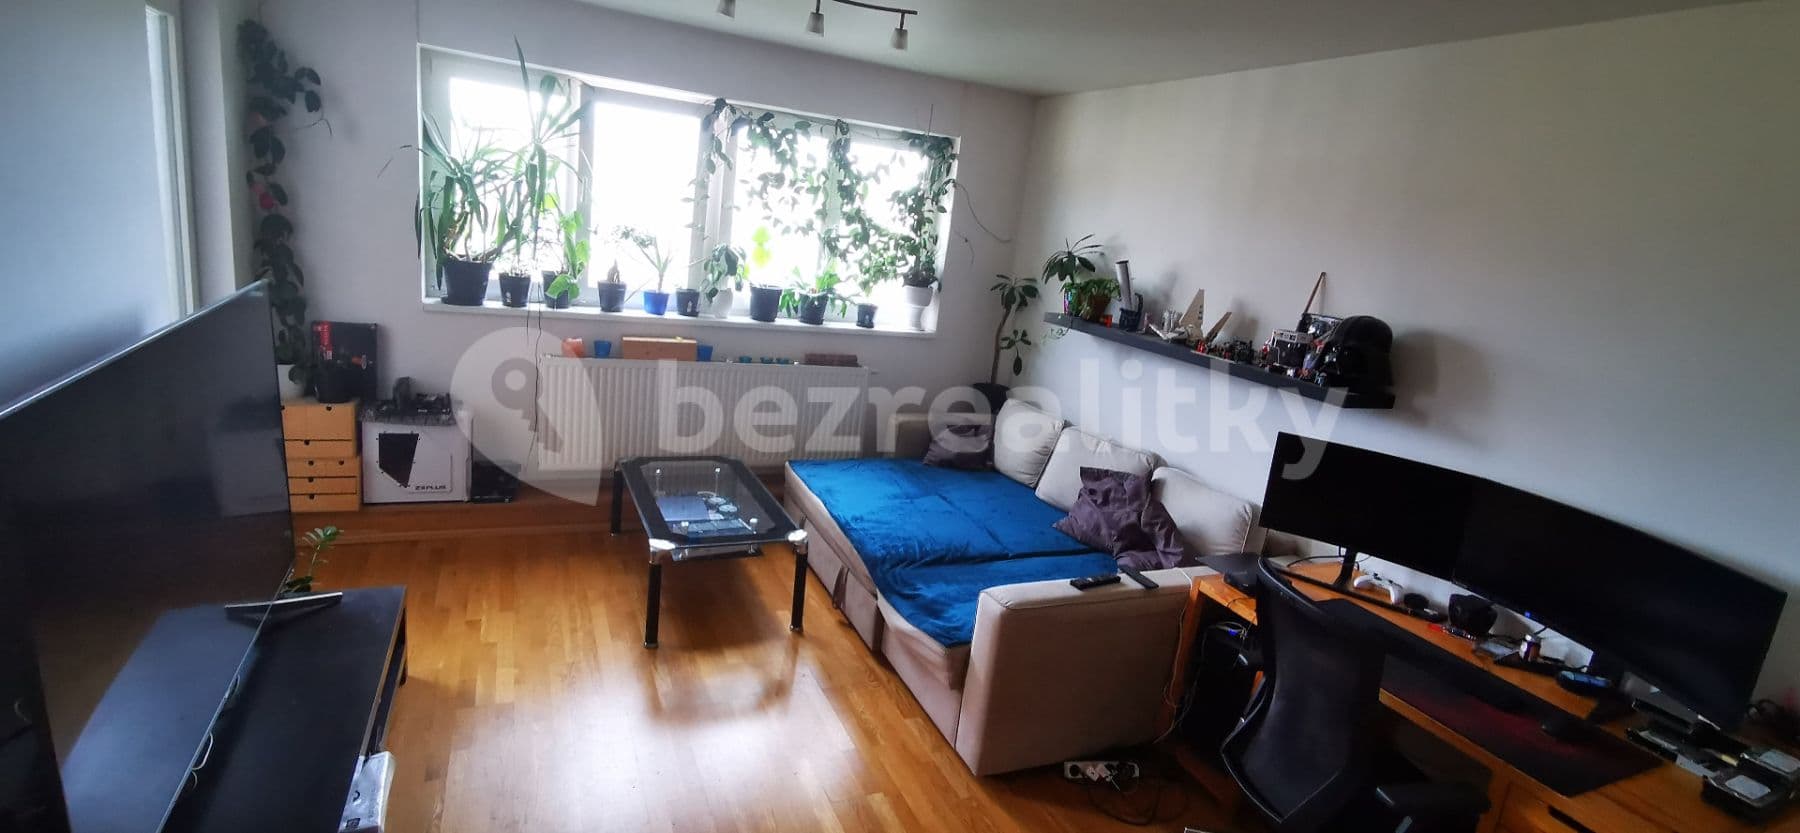 1 bedroom with open-plan kitchen flat for sale, 50 m², V Horkách, Prague, Prague